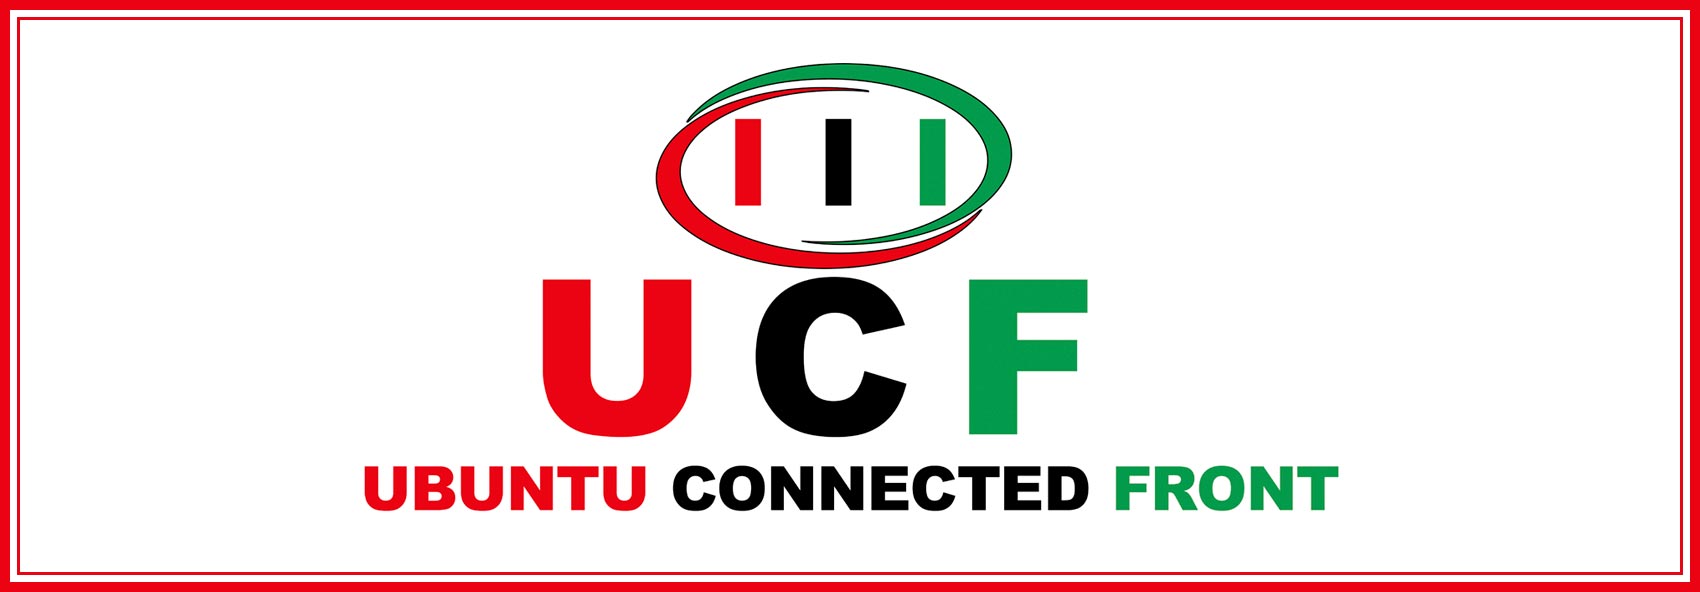 De Landelijke Politieke Partij, Ubuntu Connected Front zet door